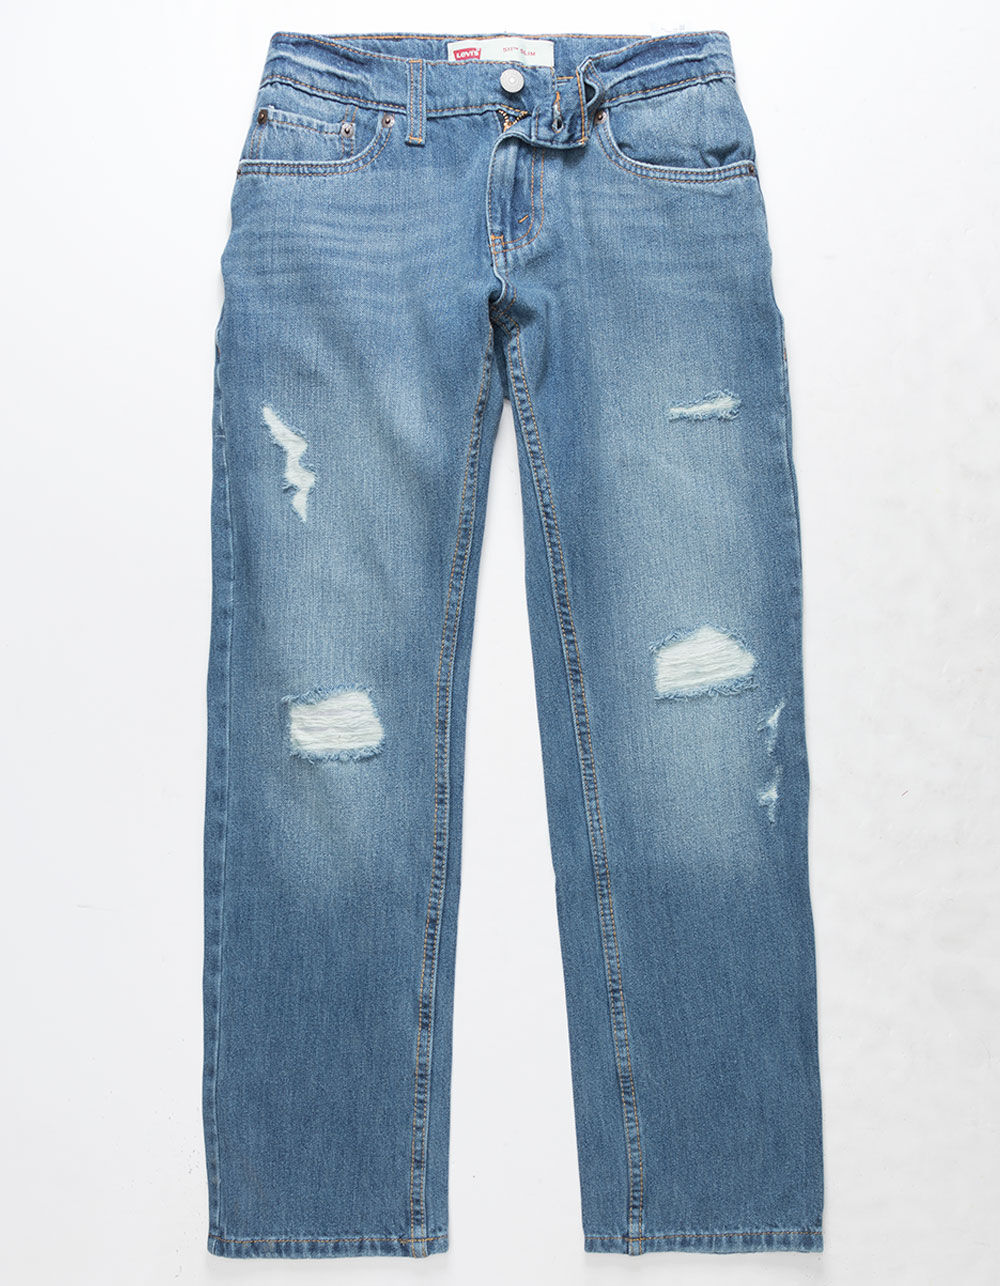 LEVI'S 511 Slim Warp Stretch Dark Wash Boys Ripped Jeans - DARK WASH |  Tillys